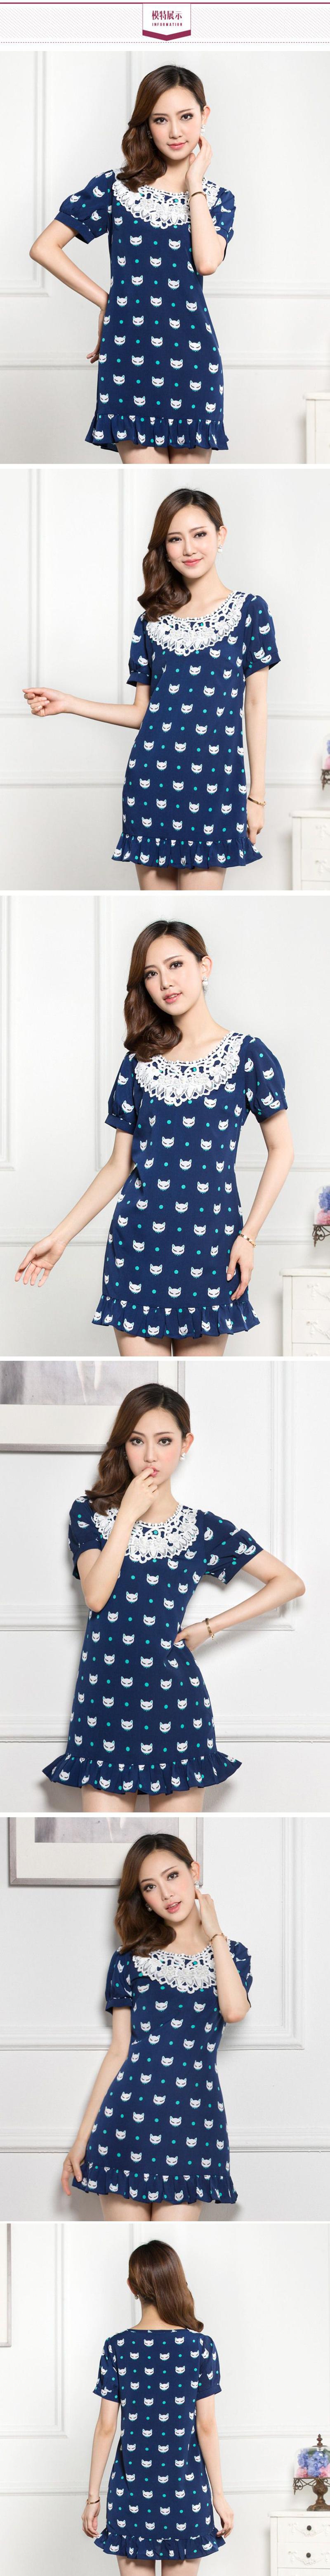 琳丹乐2015夏装新款韩版显瘦猫咪荷叶边连衣裙 减龄显瘦大码女装